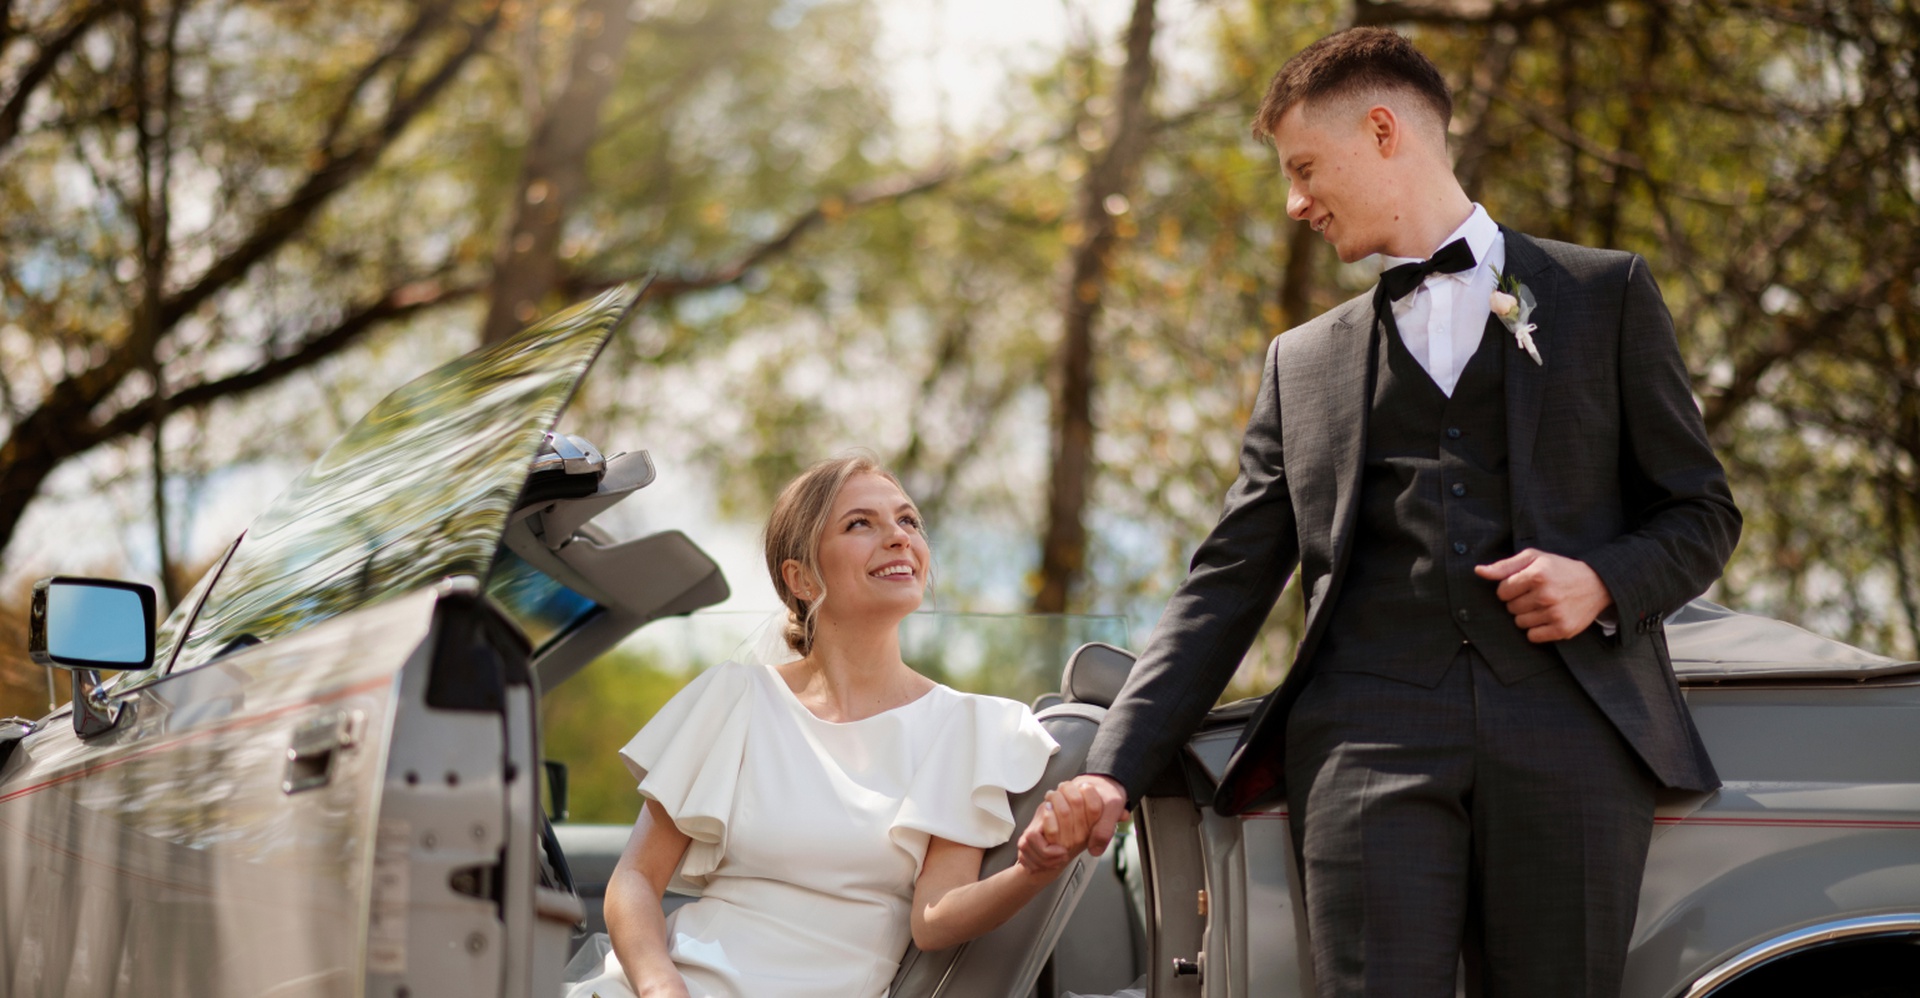 Rent a luxury wedding car